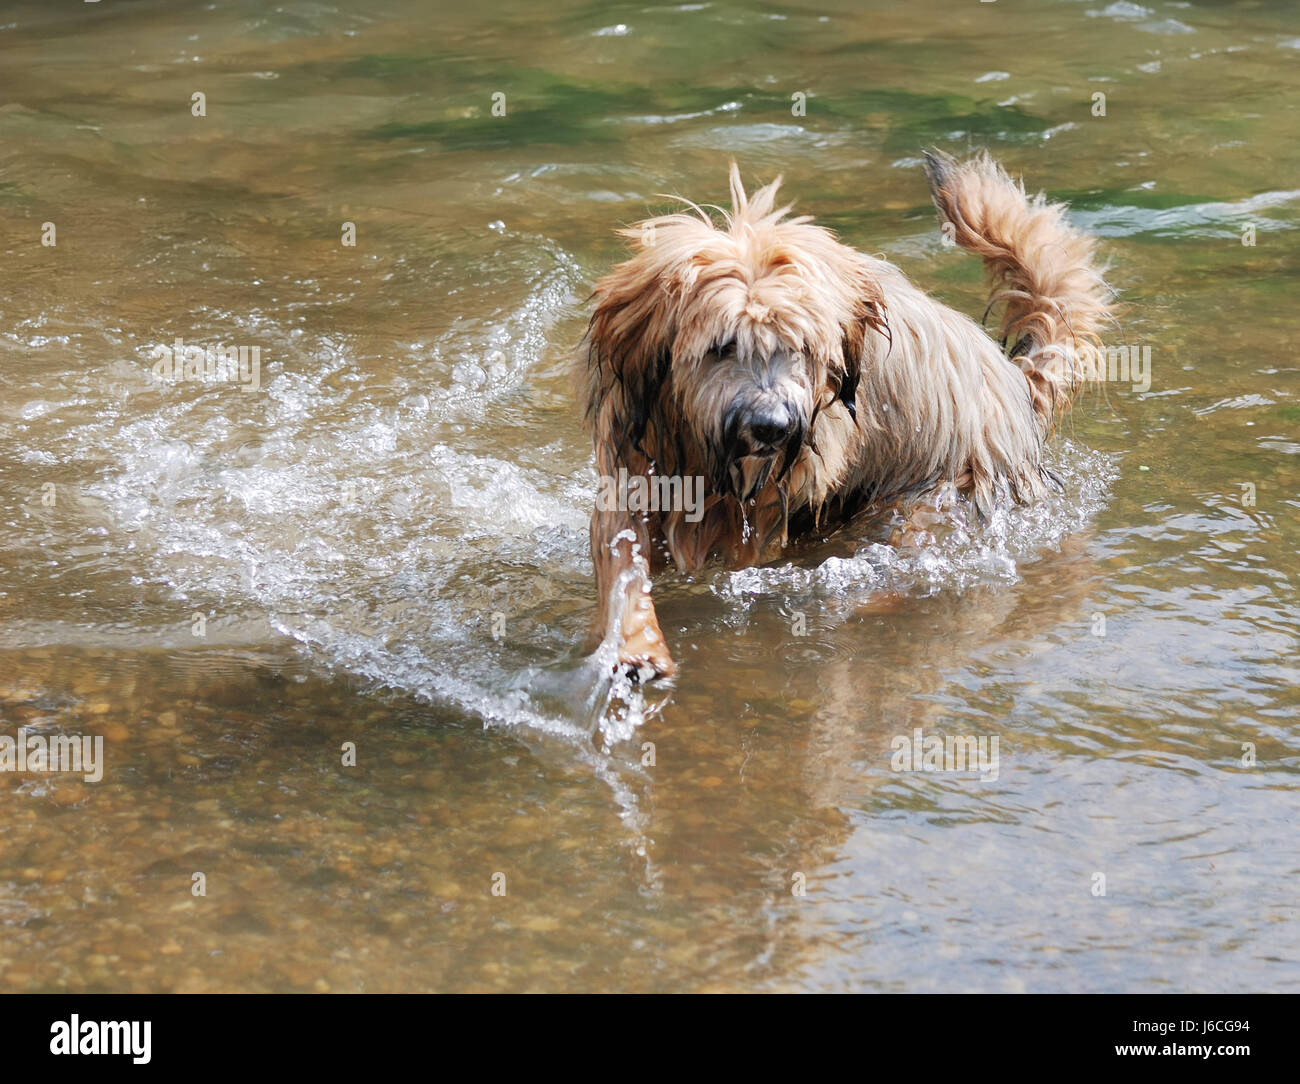 Cane cucciolo terrier giovane più giovane amico animale acqua cane cucciolo bagnato divertente Foto Stock